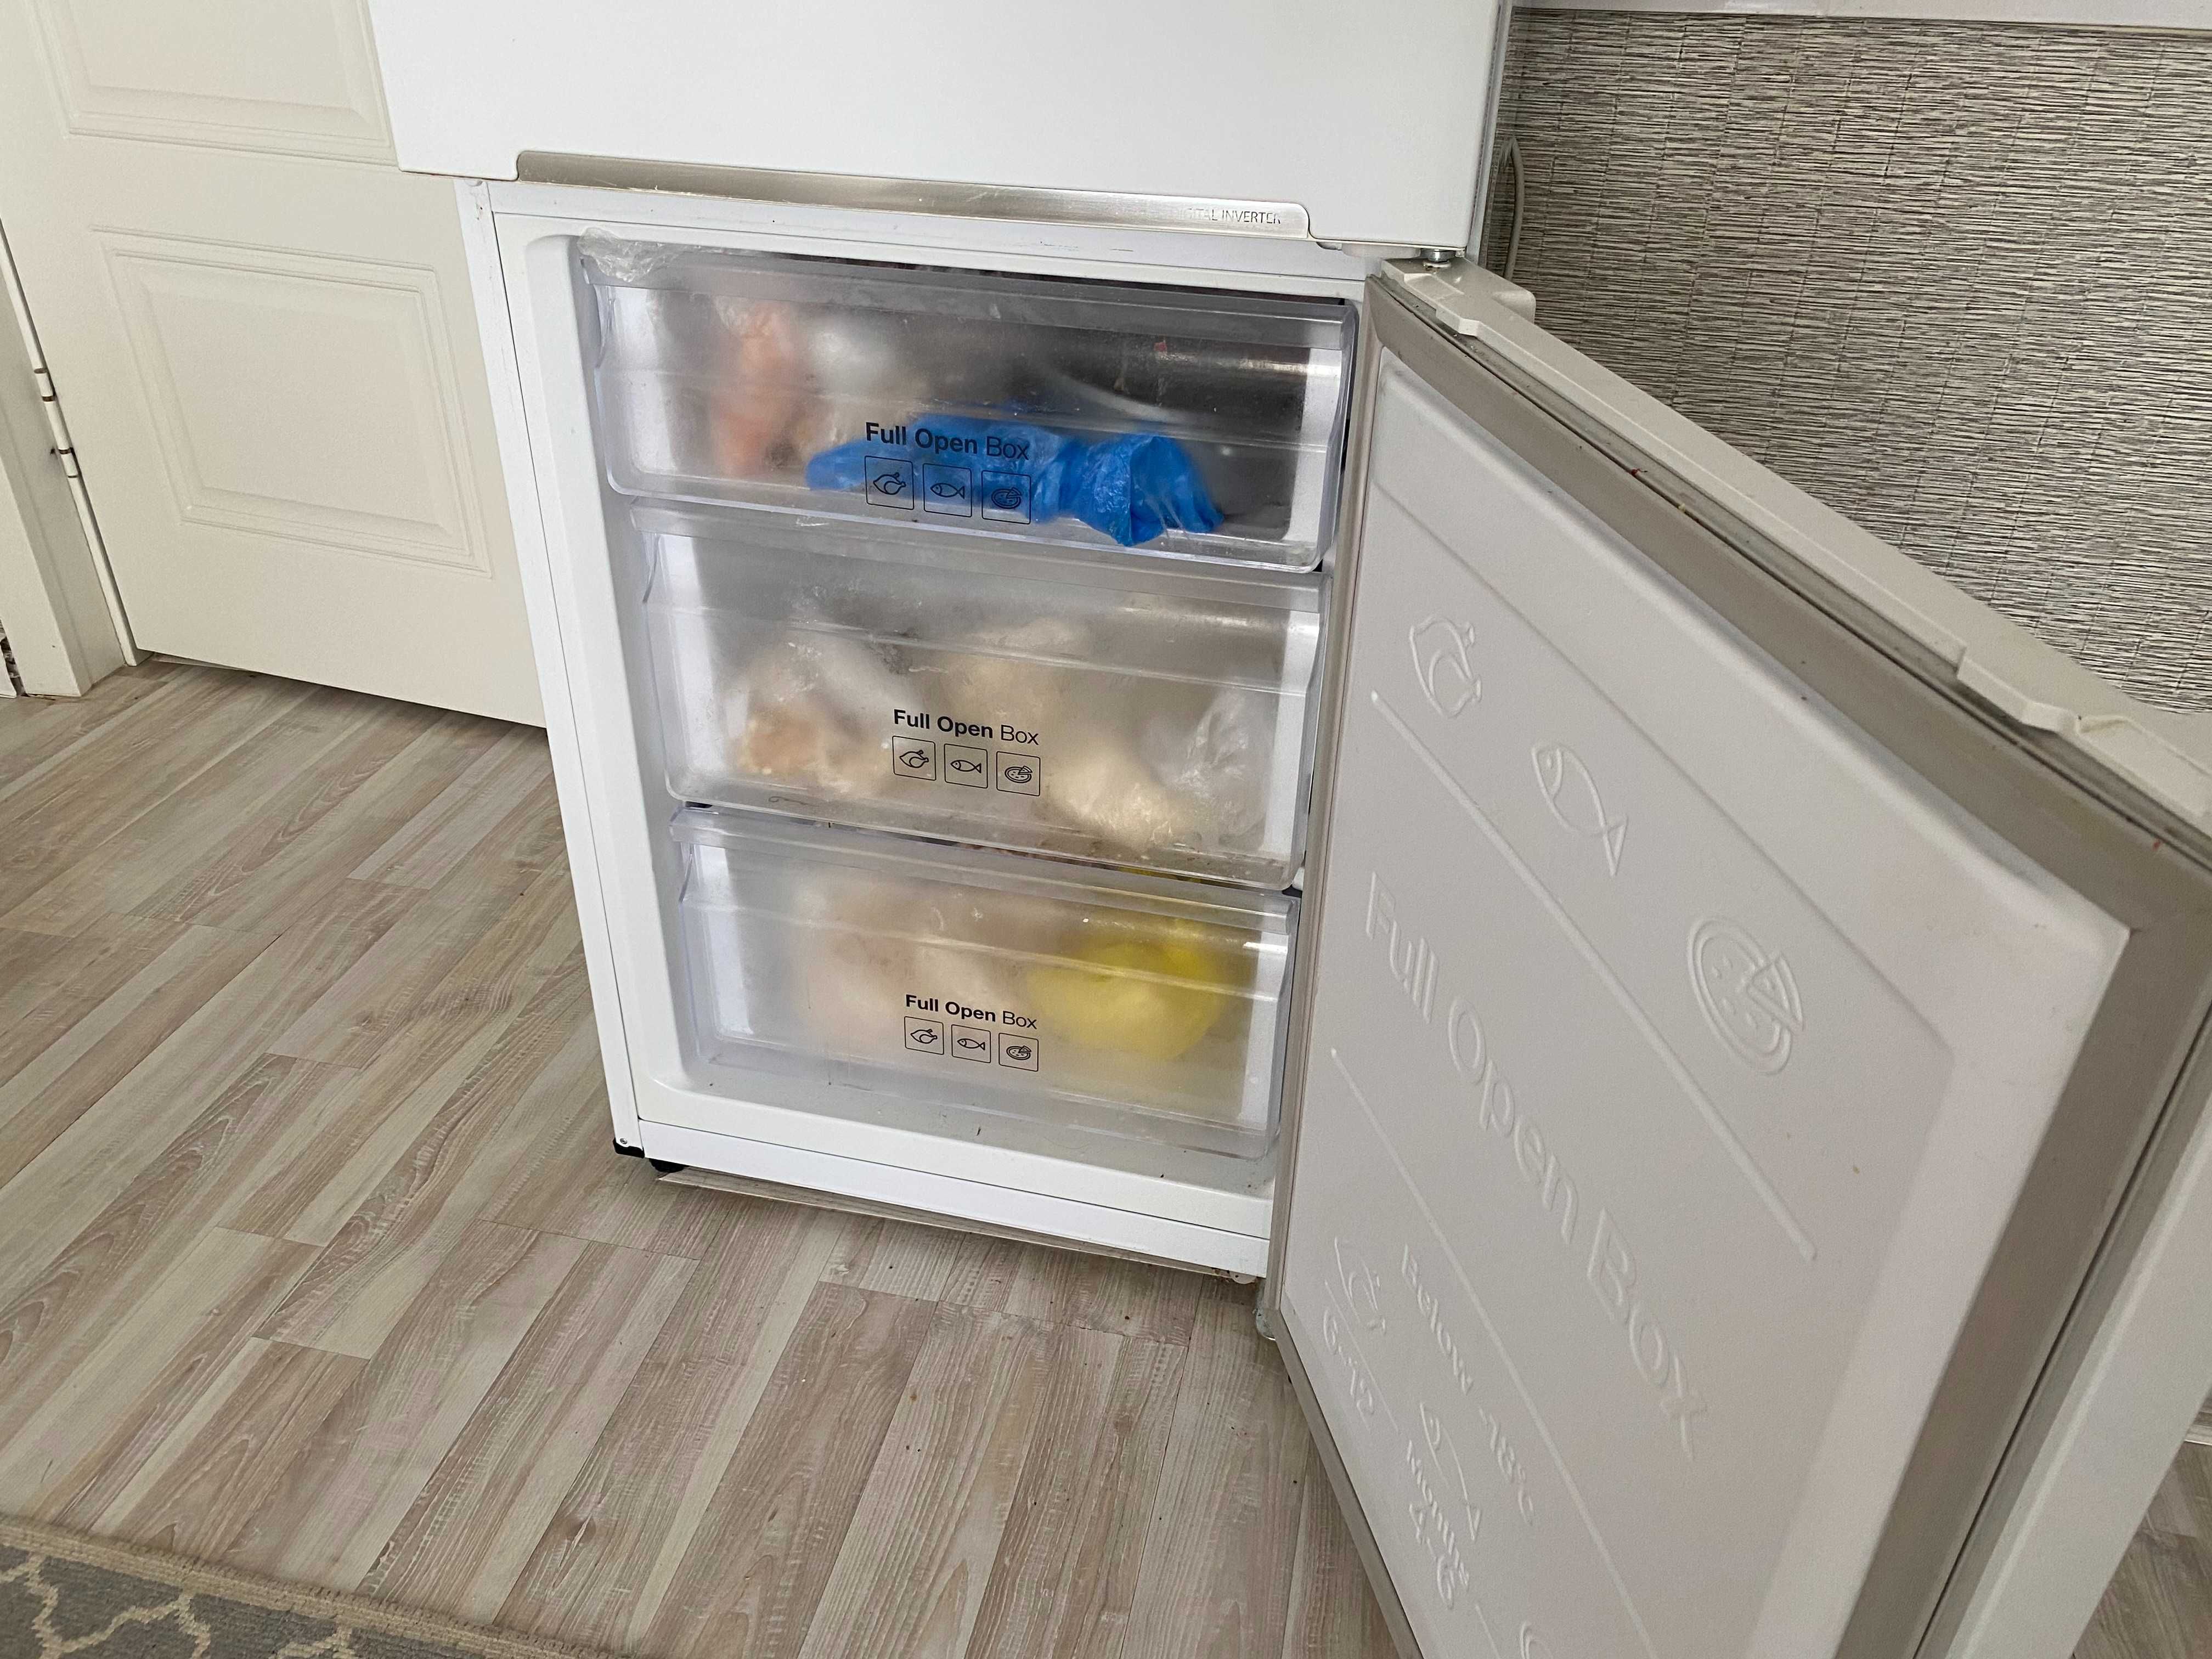 холодильник Samsung